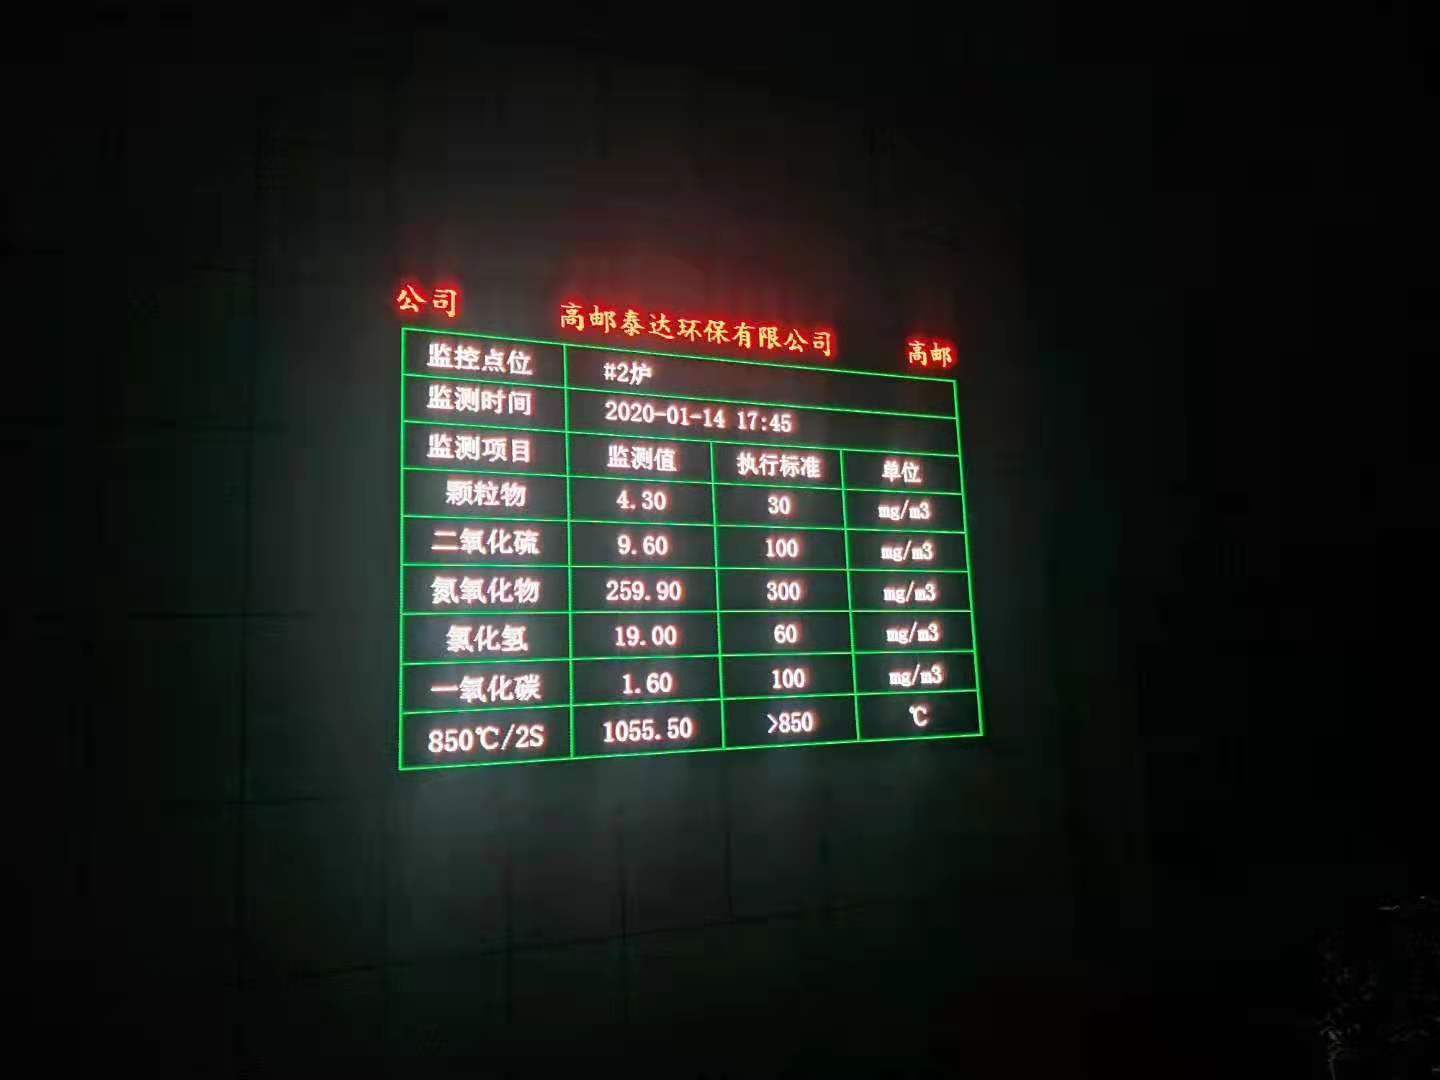 惠州環保公示LED屏廠家 博控數采儀對接顯示屏